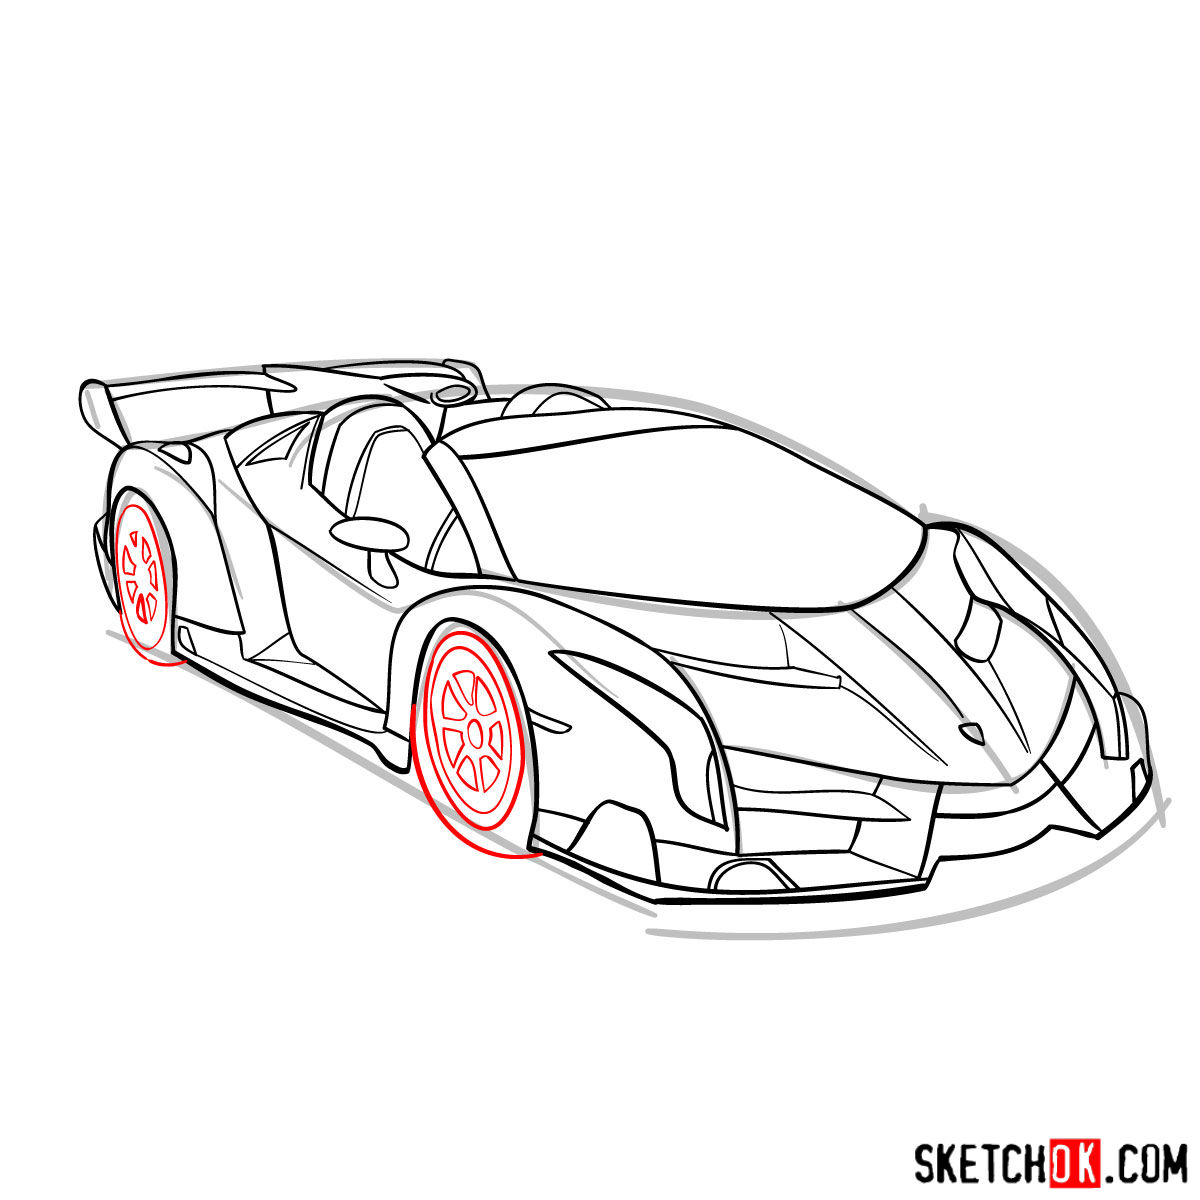 Lamborghini Reventon Sketch | sfaisal030394 | Flickr